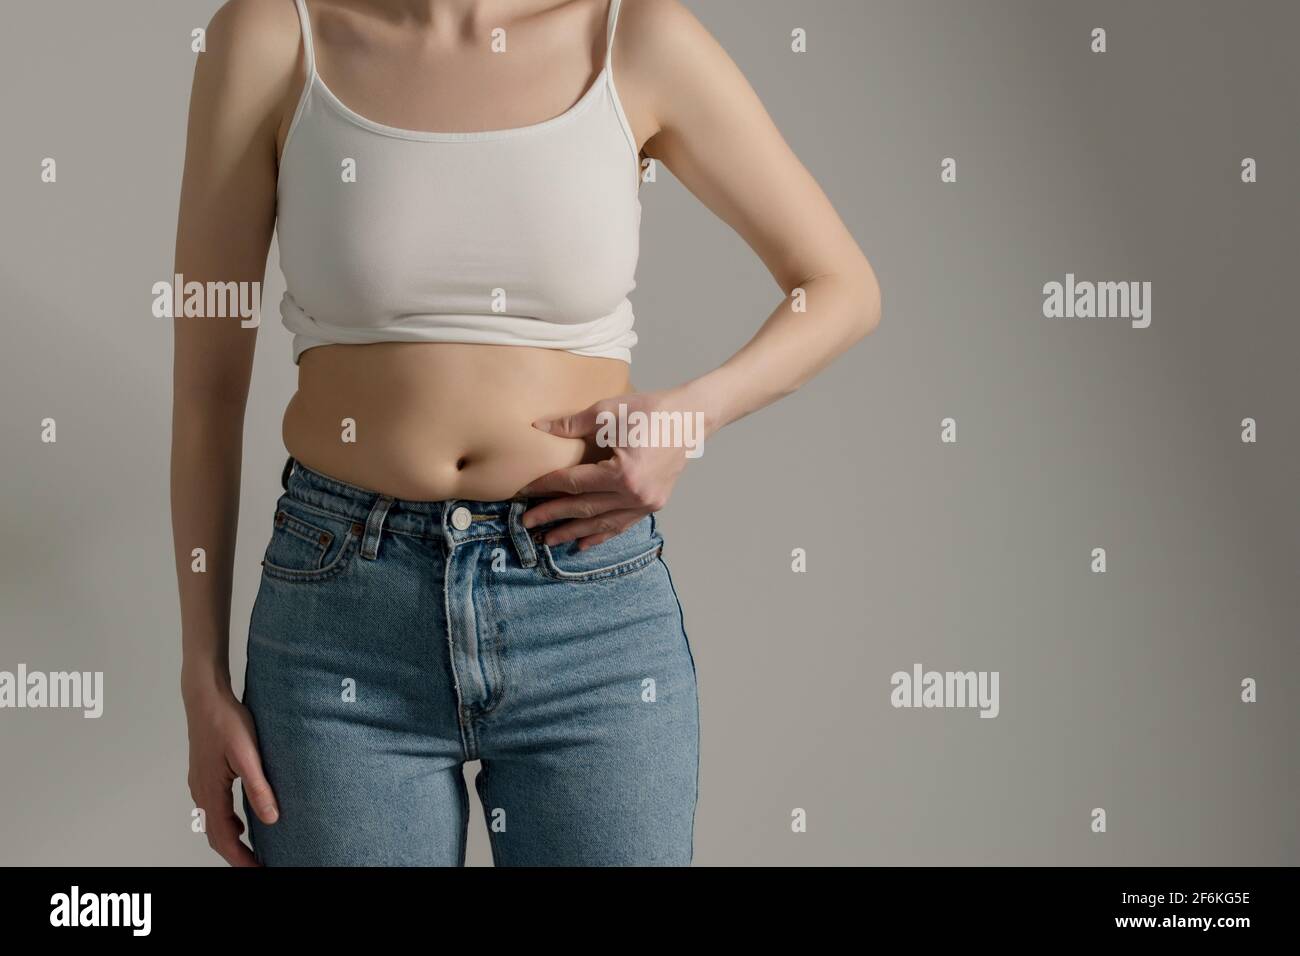 Mujer en jeans y camisa blanca pellizcando su vientre gordo. Figura de la mujer estudio de primer plano con fondo gris. Dieta y concepto de pérdida de grasa. Foto de stock